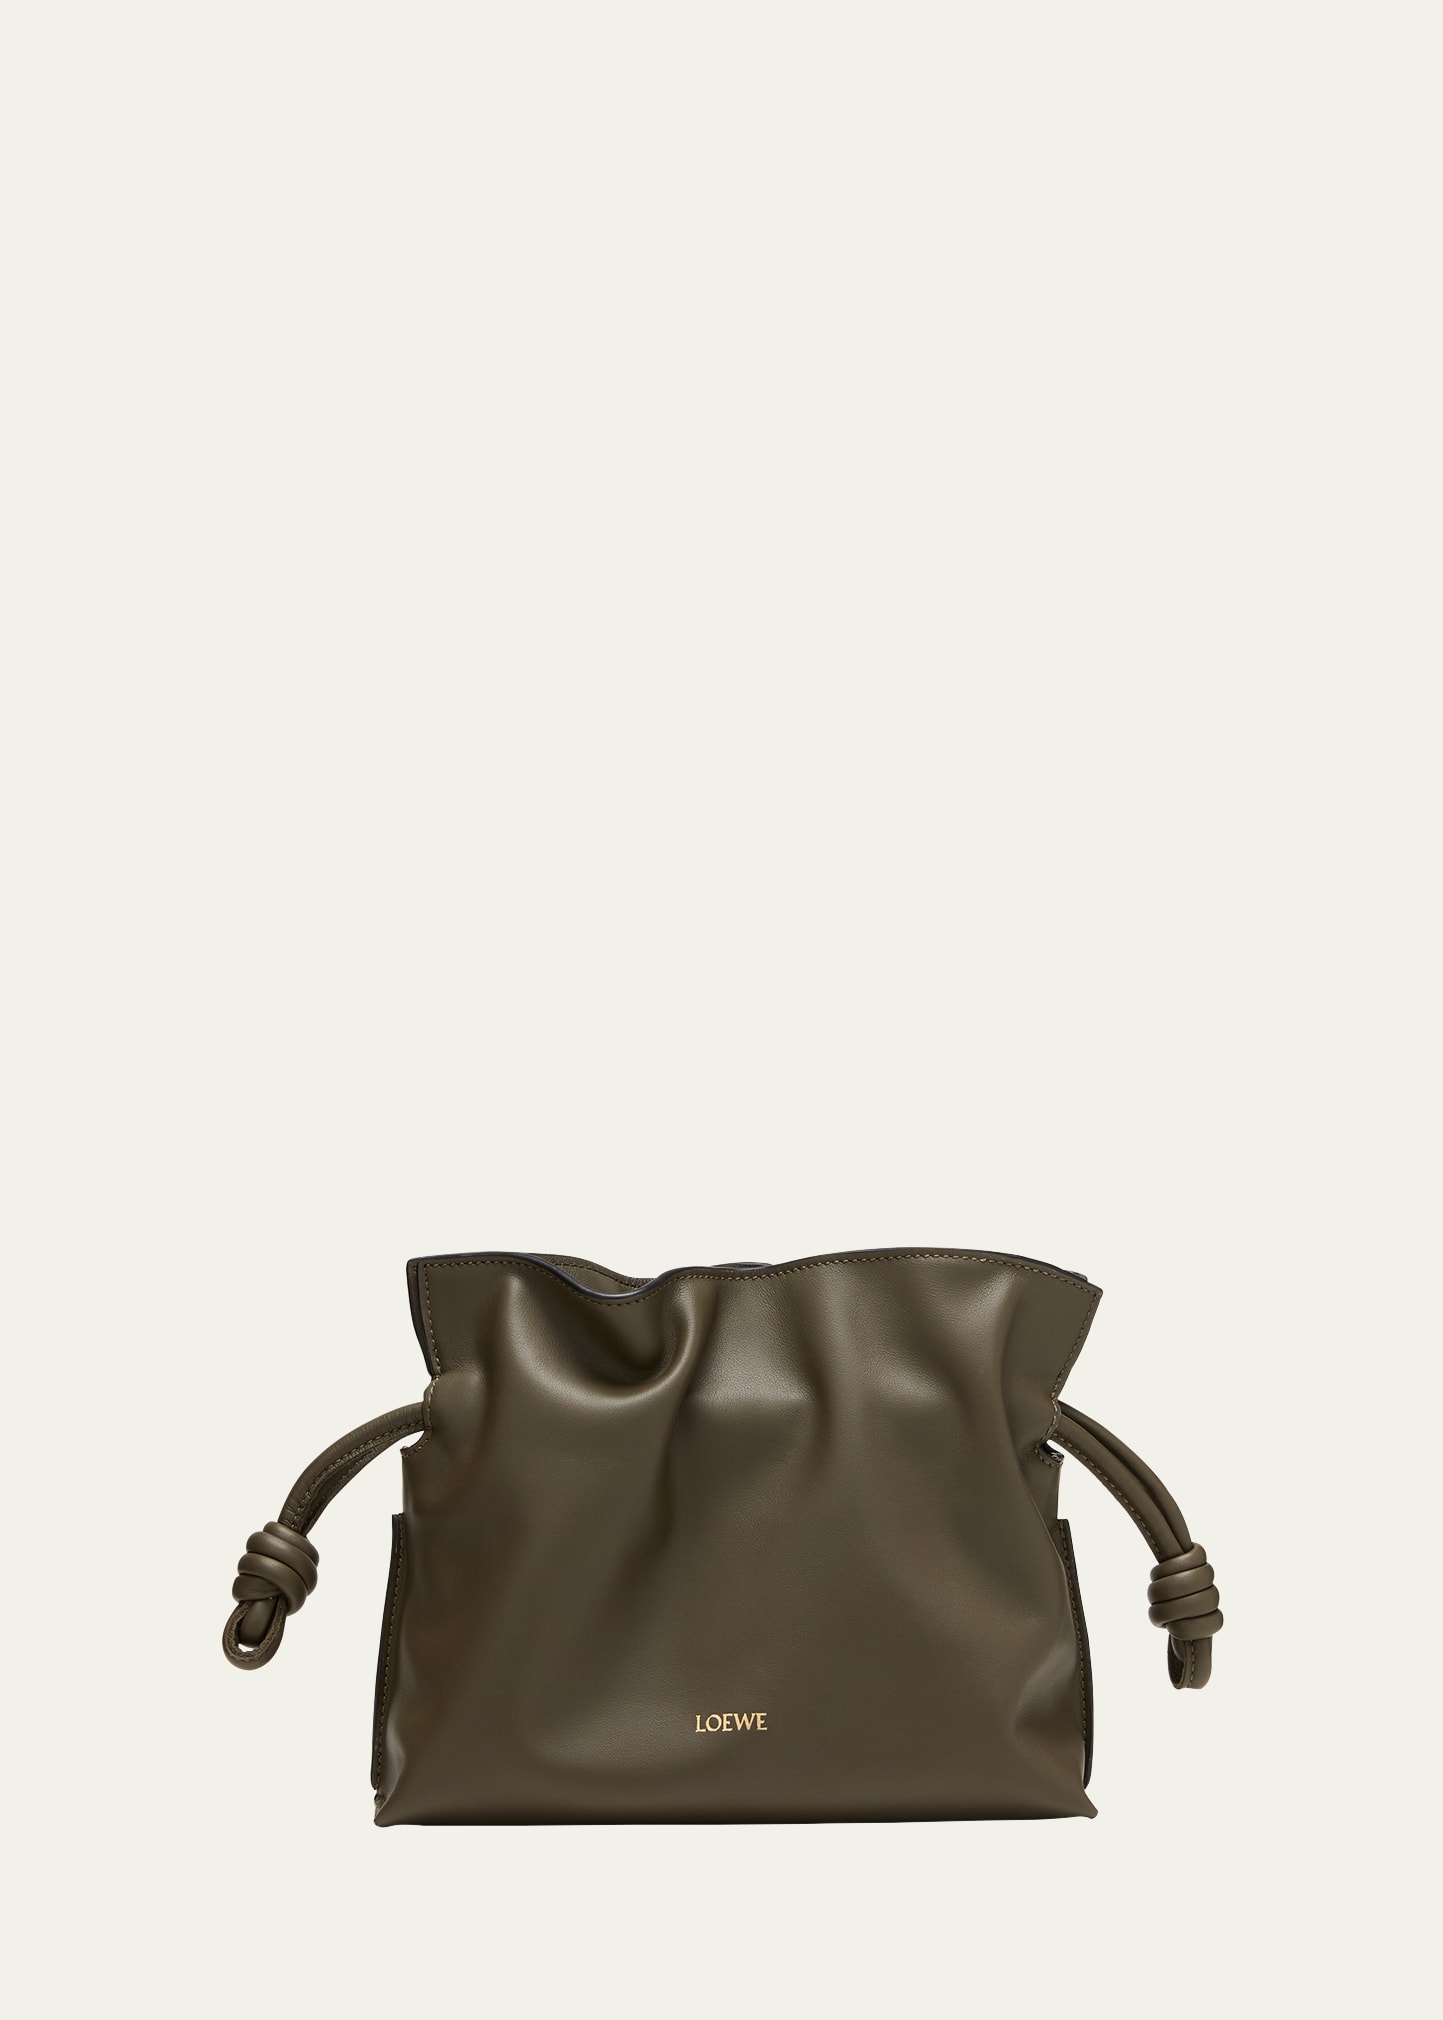 Loewe Flamenco Mini Leather Clutch Bag In Burgundy